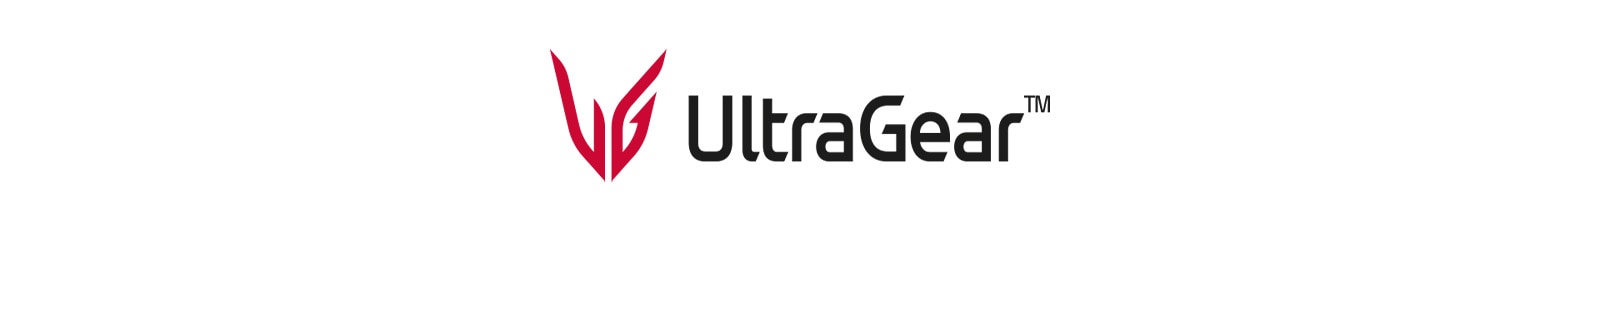 Игровой монитор UltraGear™.